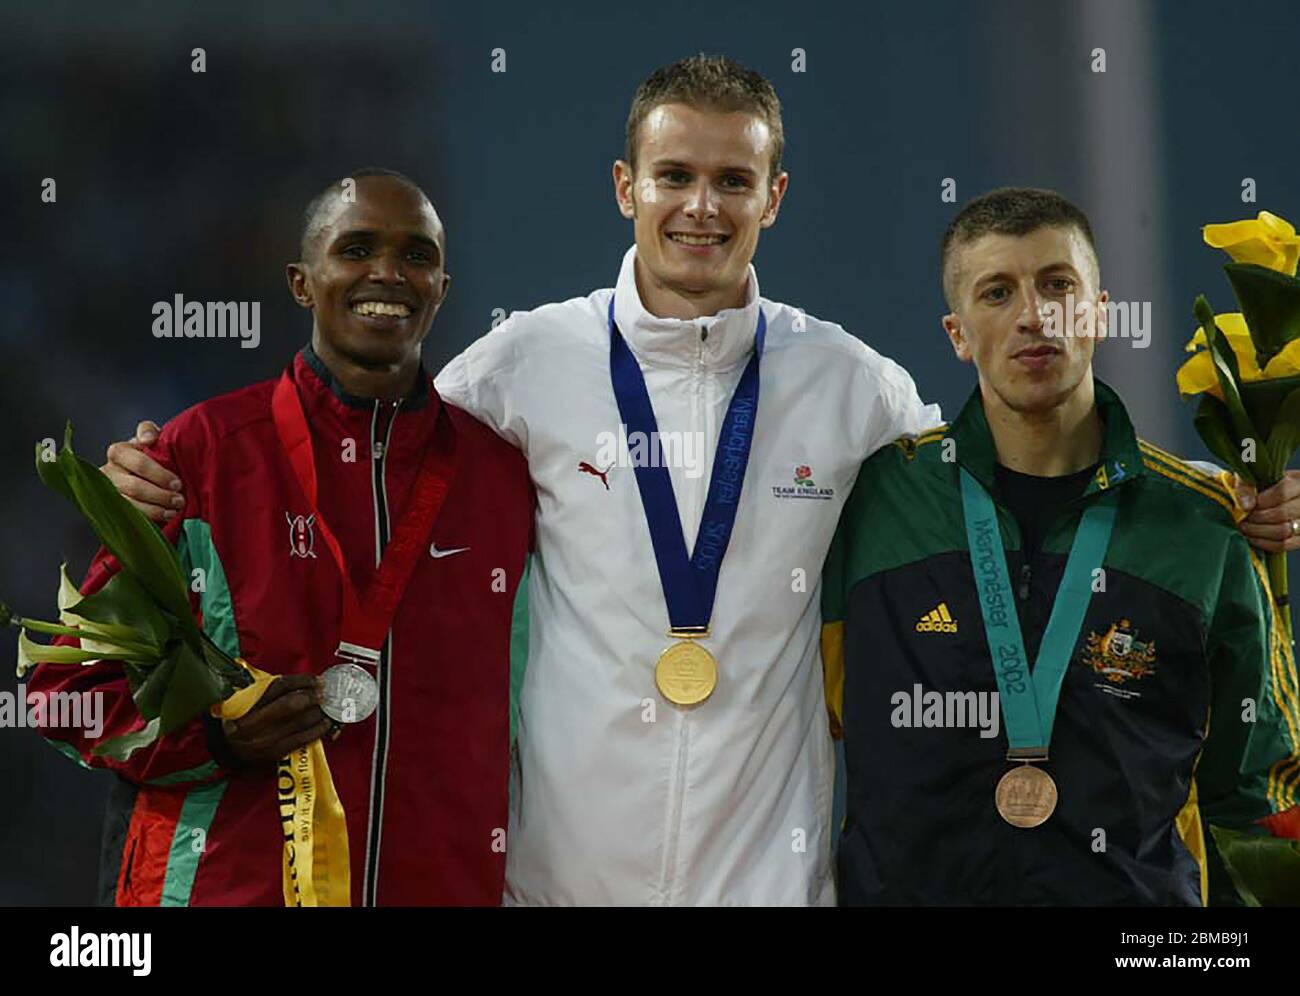 MANCHESTER - 31 LUGLIO: L-R William Chirchir del Kenya (Argento) Mike East of England (Oro) e Youcef Abdi dell'Australia (Bronzo) dopo la finale maschile di 1500m Foto Stock